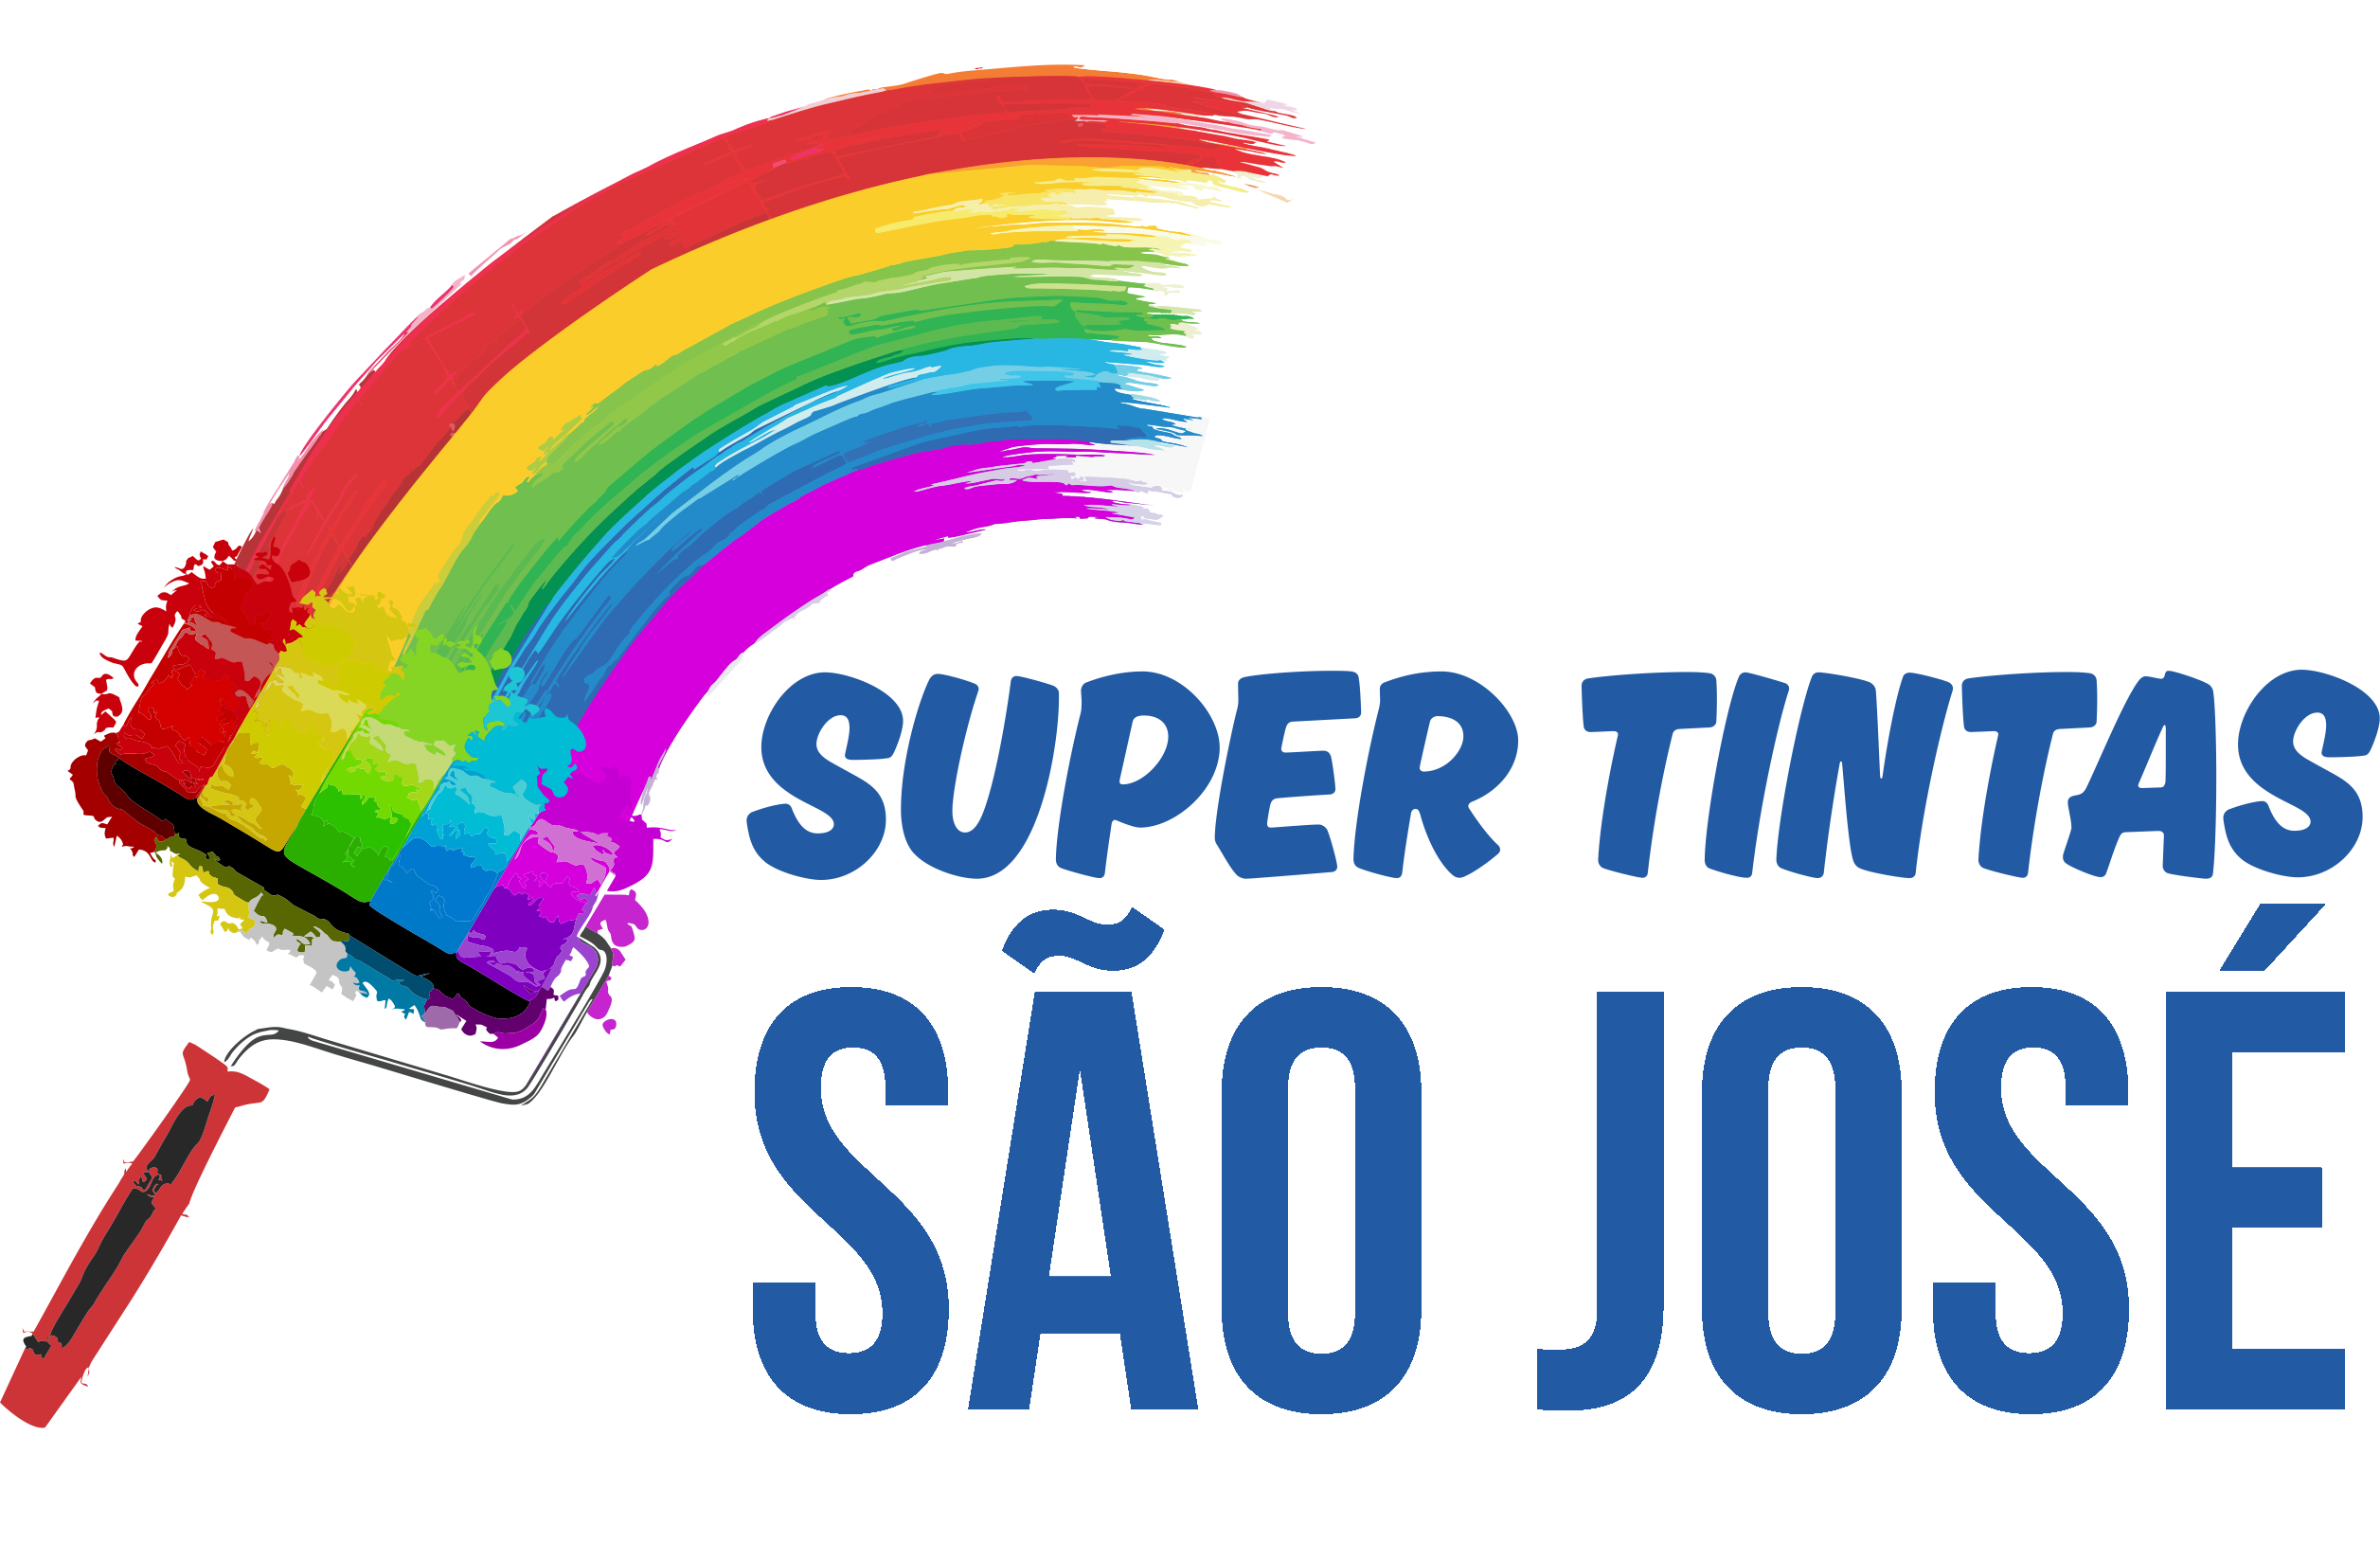 Super Tintas São José CIC